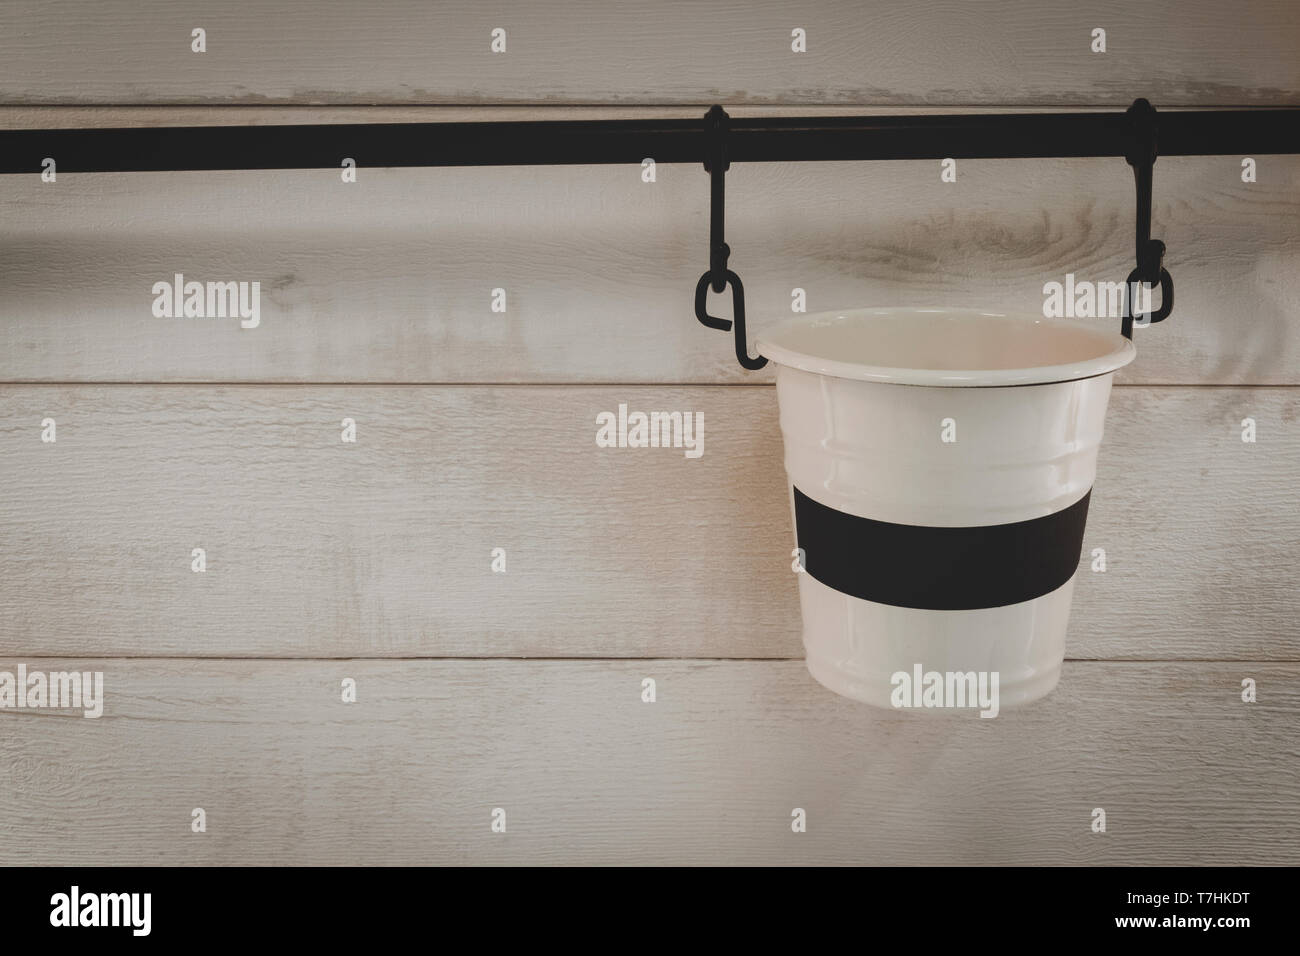 Leere kleine weiße Metall Eimer oder Topf hängen an der Bar mit Holz Wand  Hintergrund im Zimmer. home Deko Objekt- und Innenraumkonzept  Stockfotografie - Alamy